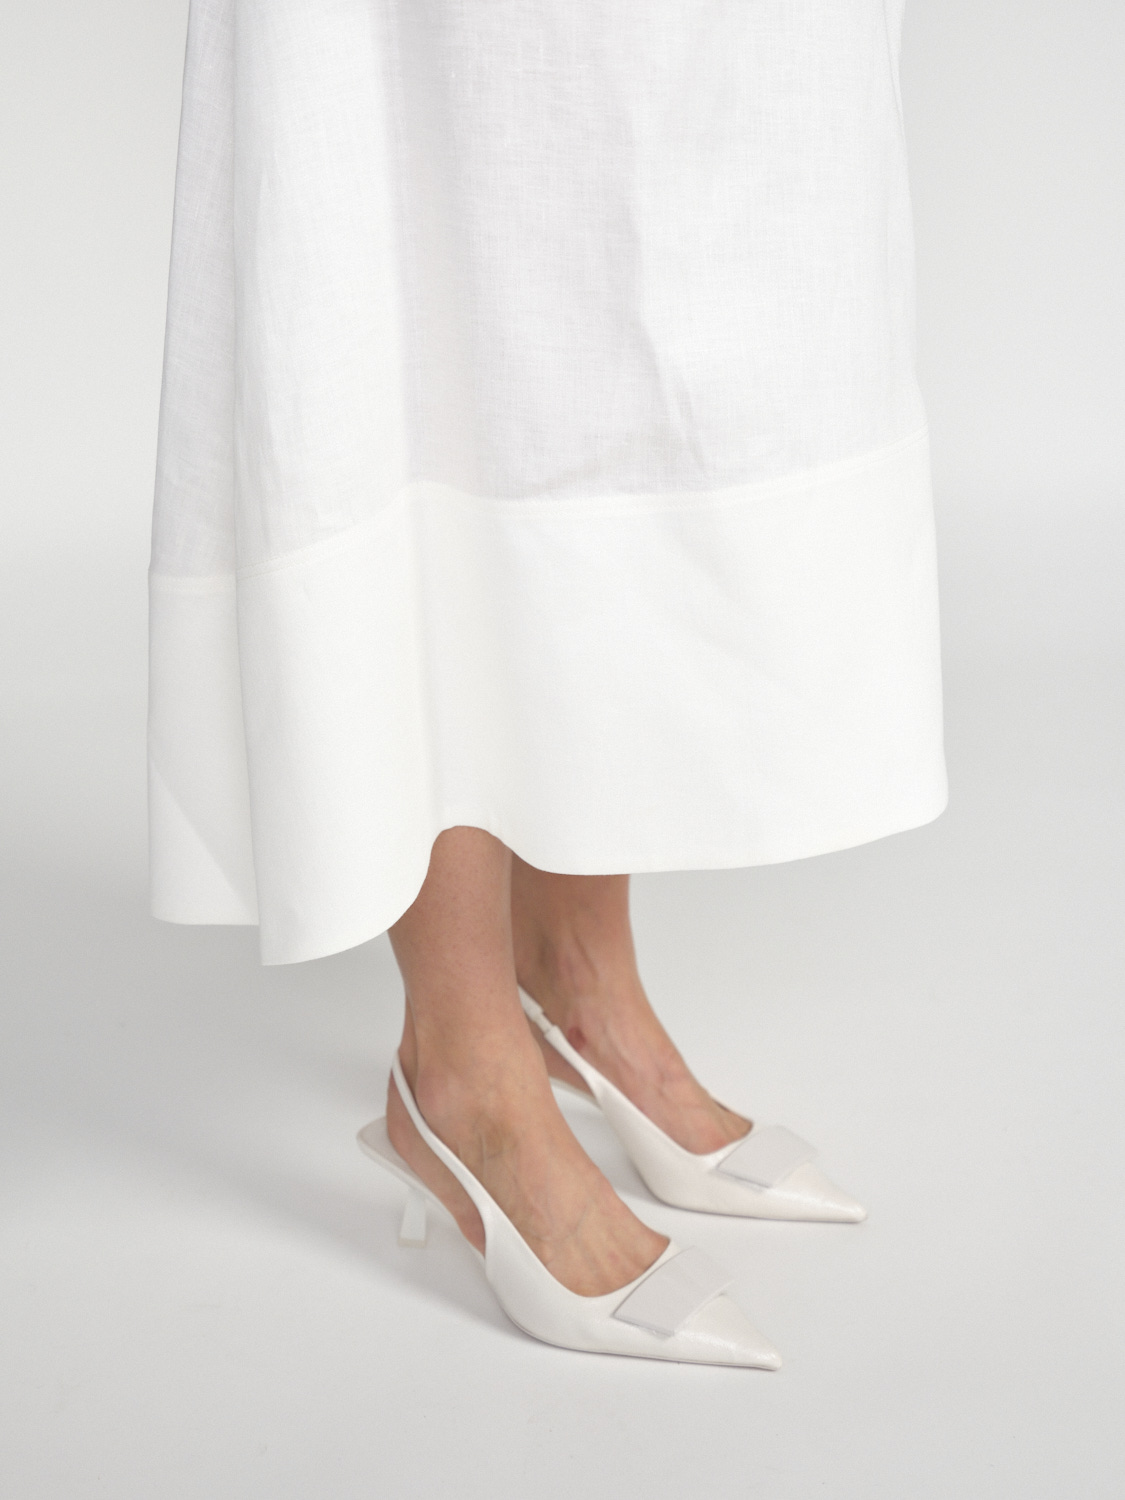 Iris von Arnim Lelita – linen midi skirt  white 36